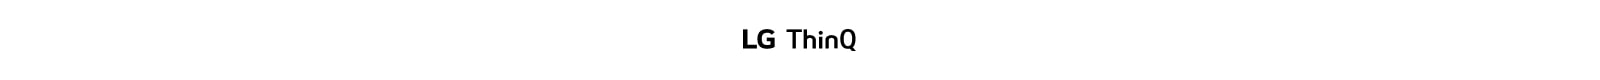 LG ThinQ Logo